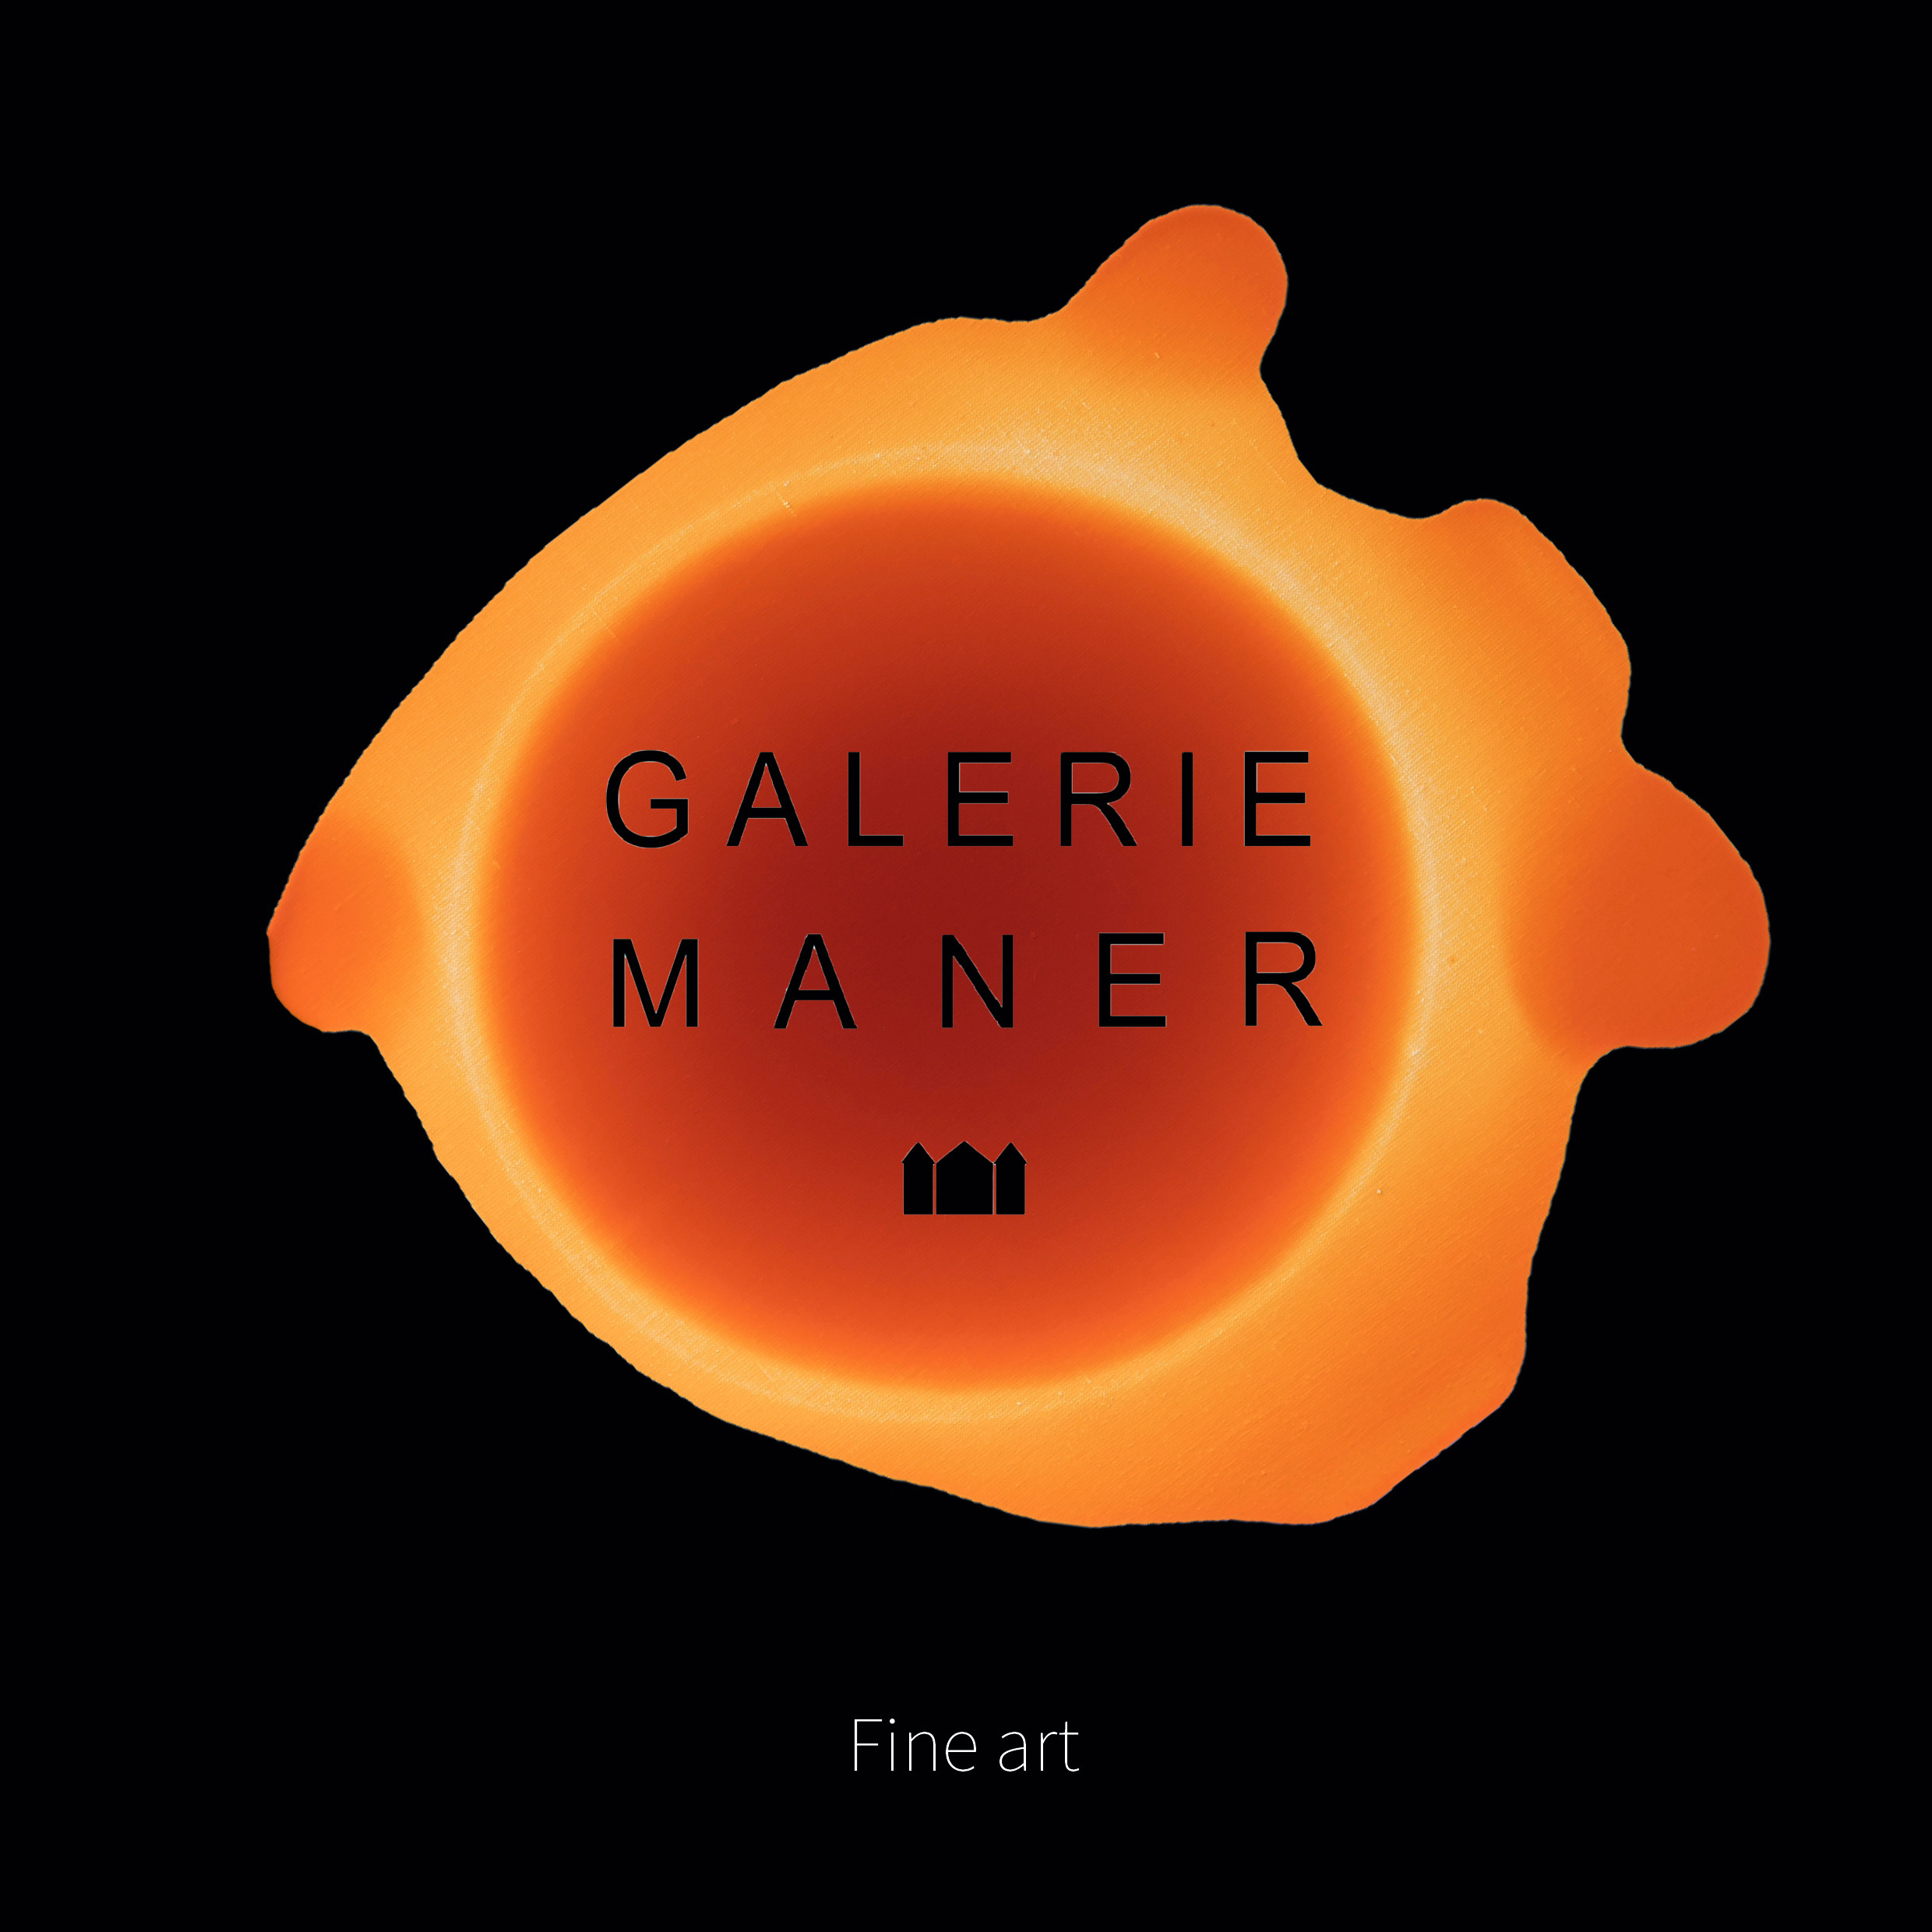 Nouveautés Galerie Maner 2019 - Collection Fine Art superbe galerie d'art à Pont Aven Bretagne Sculpture et peintures